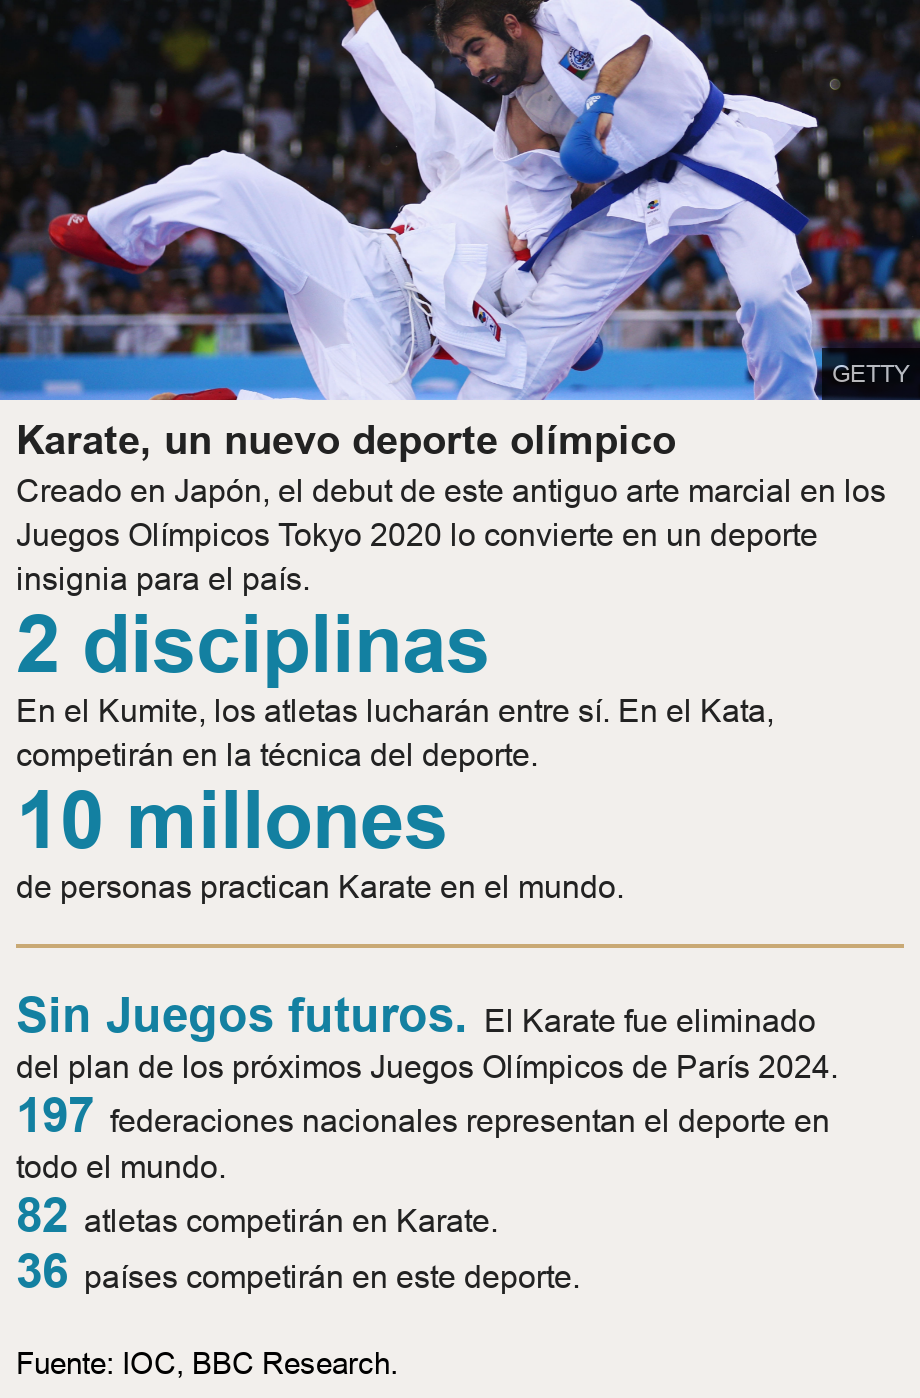 Karate, un nuevo deporte olímpico. Creado en Japón, el debut de este antiguo arte marcial en los Juegos Olímpicos Tokyo 2020 lo convierte en un deporte insignia para el país. [ 2 disciplinas En el Kumite, los atletas lucharán entre sí. En el Kata, competirán en la técnica del deporte. ],[ 10 millones de personas practican Karate en el mundo. ] [ Sin Juegos futuros. El Karate fue eliminado del plan de los próximos Juegos Olímpicos de París 2024. ],[ 197 federaciones nacionales representan el deporte en todo el mundo. ],[ 82 atletas competirán en Karate. ],[ 36 países competirán en este deporte. ], Source: Fuente: IOC, BBC Research., Image: Rafael Aghayev of Azerbaijan (blue) competes with Luigi Busa of Italy (red) during the Men's Kumite -75kg final on day one of the Baku 2015 European Games, June 13, 2015.